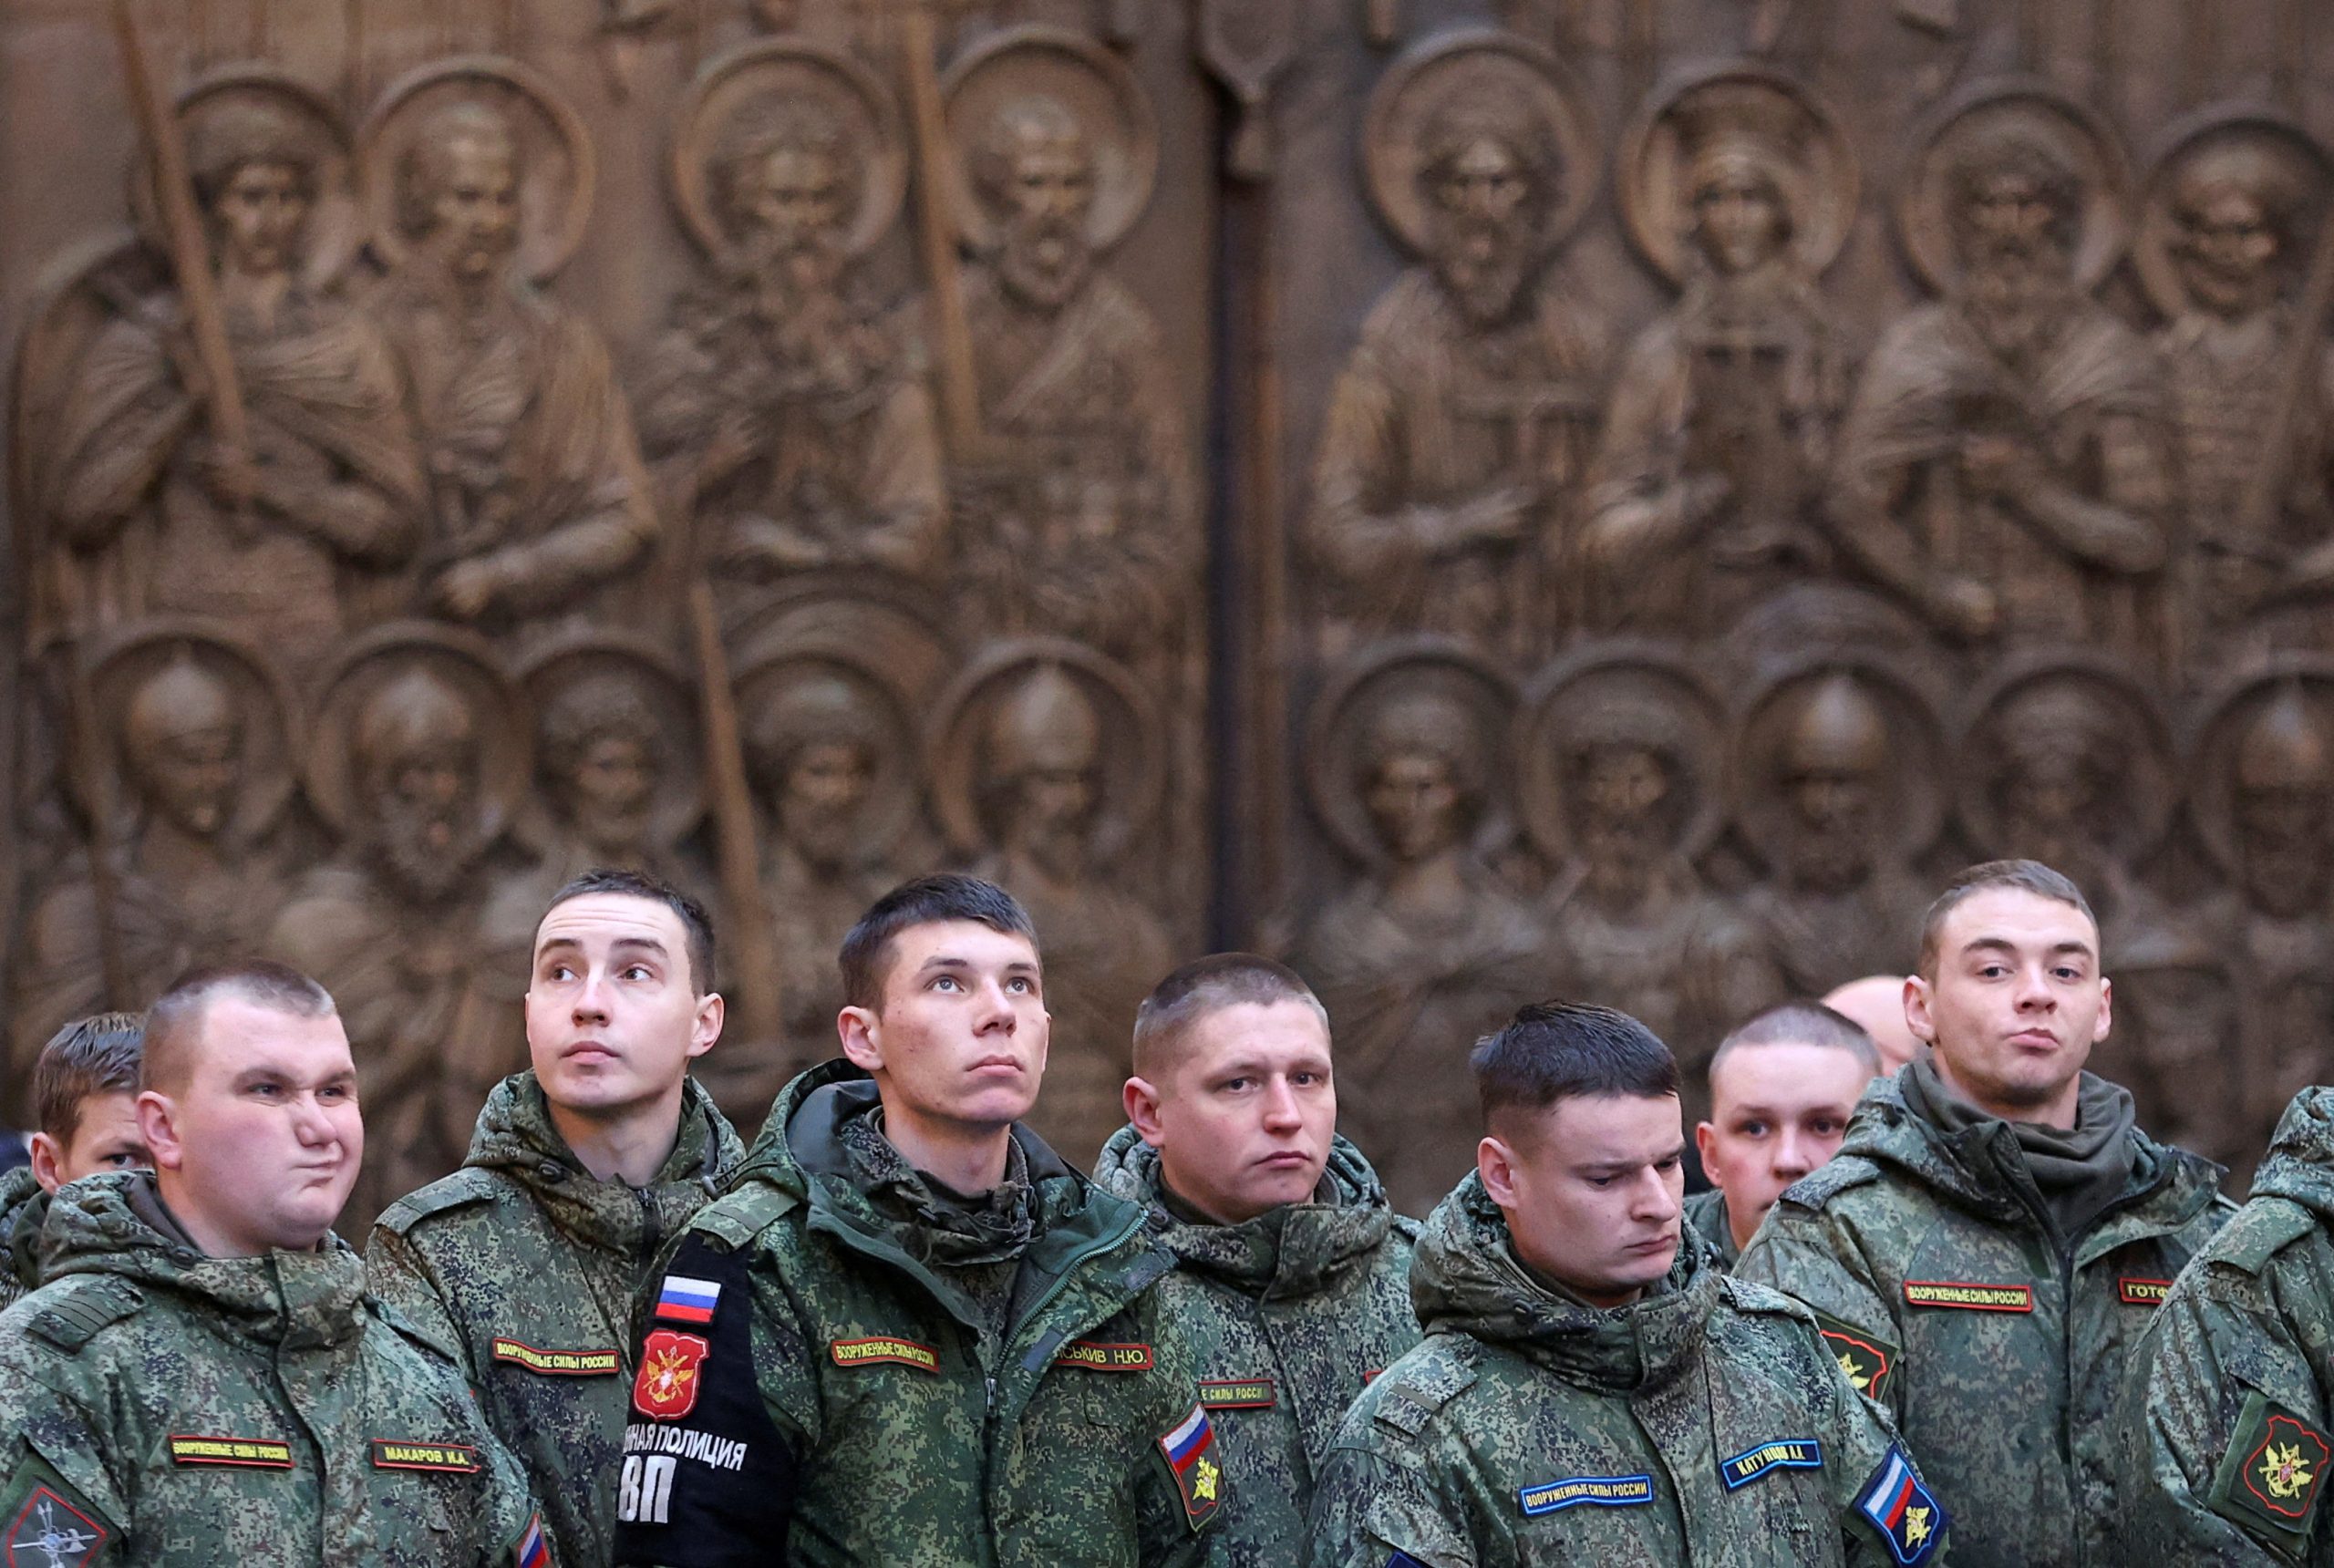 Συγκλονιστική εικόνα: Ορθόδοξοι Ρώσοι μαχητές προσεύχονται, εξορμούν και διαλύουν την ουκρανική άμυνα στο Χρόμοβι